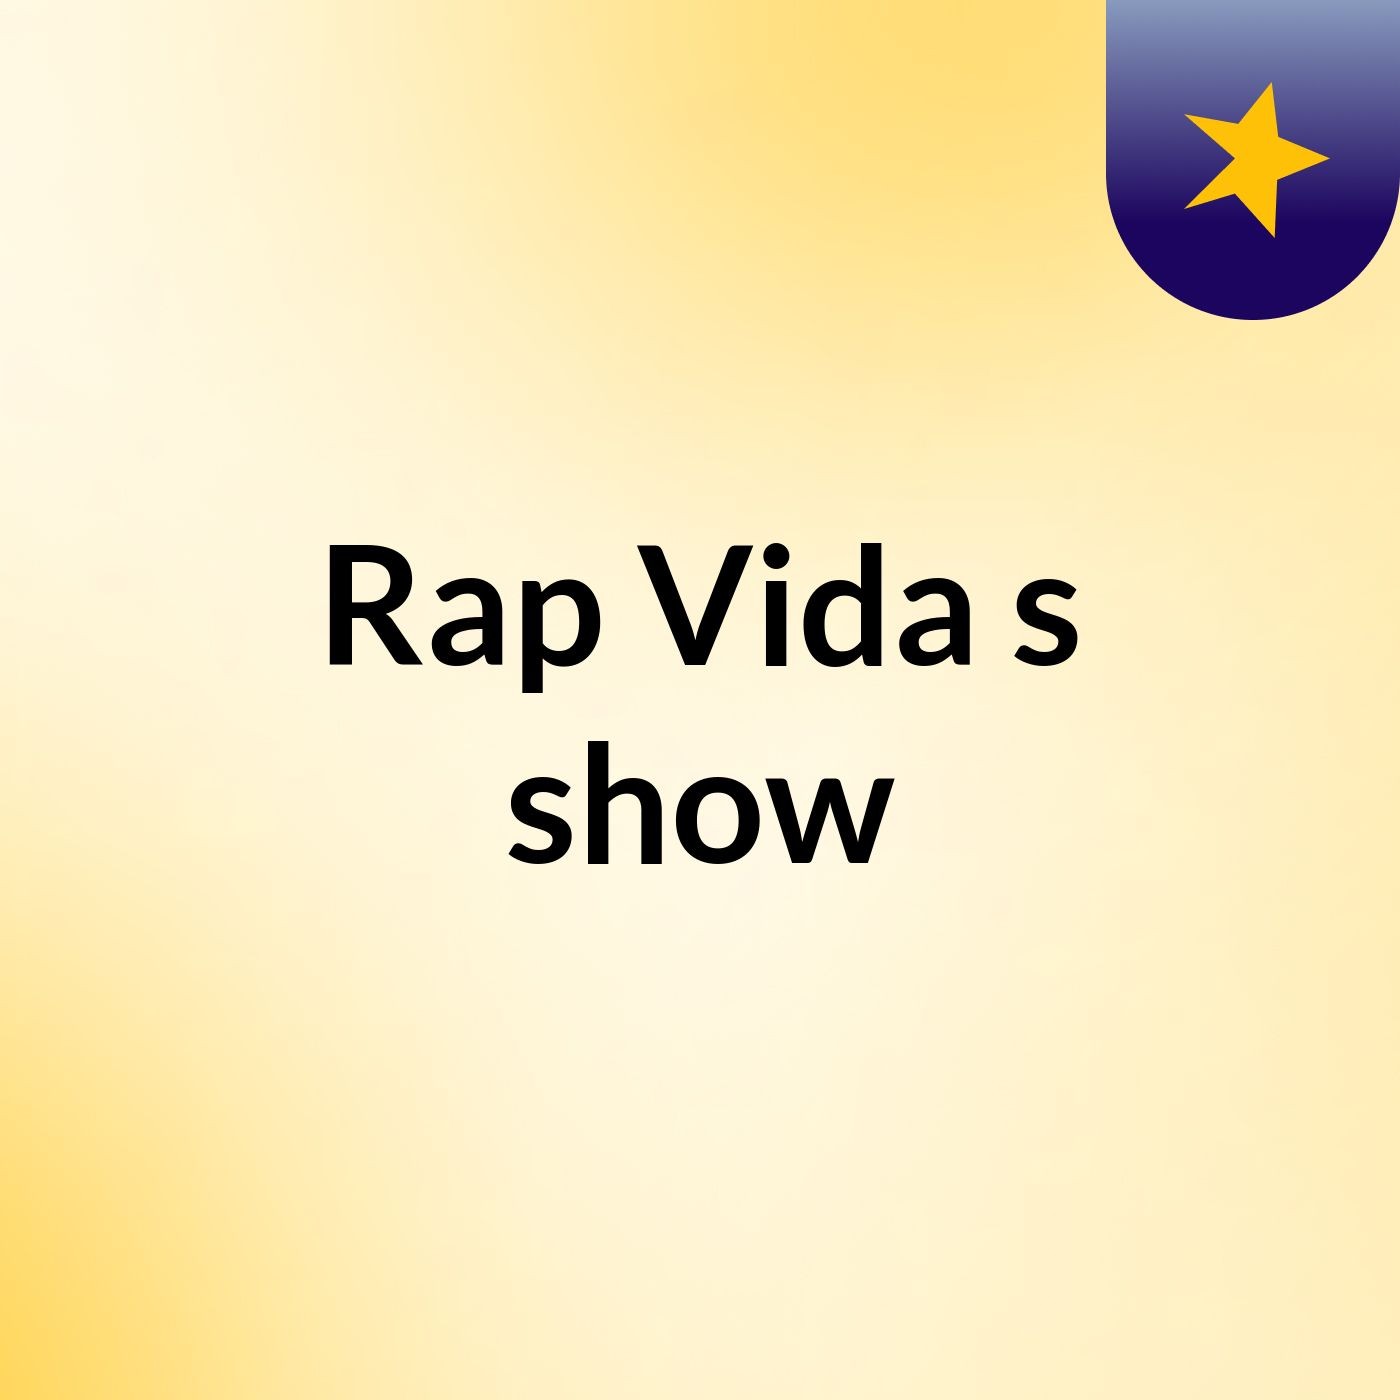 Rap Vida's show